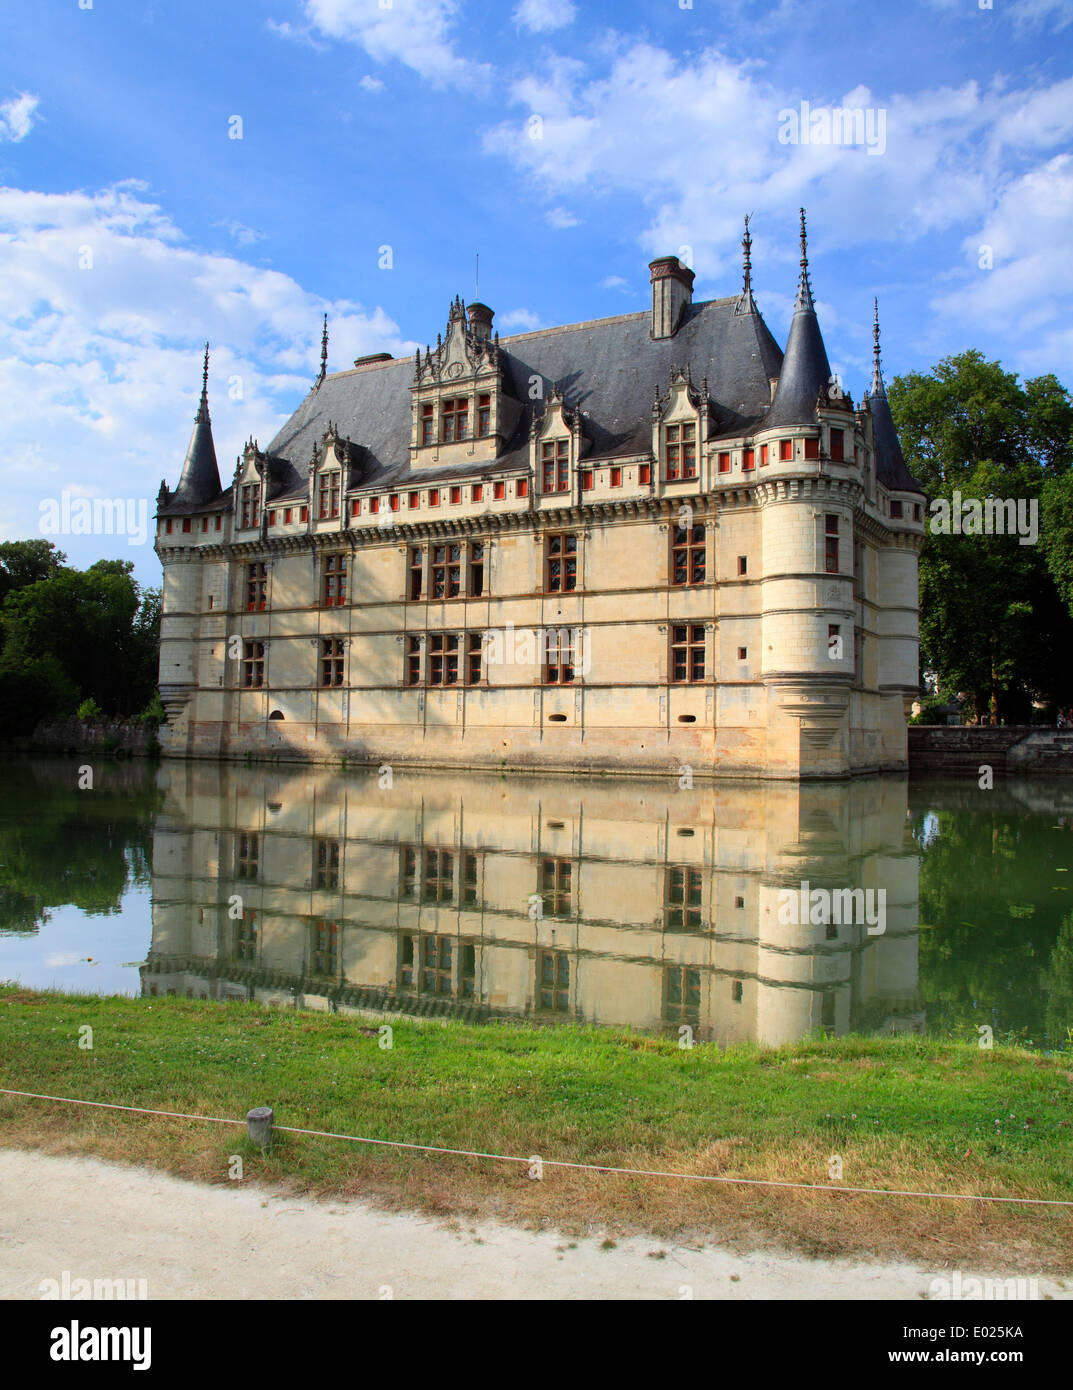 Photo du chateau d'Azay-le-Rideau, situé sur une île dans l'Indre, vallée de la Loire, France Banque D'Images